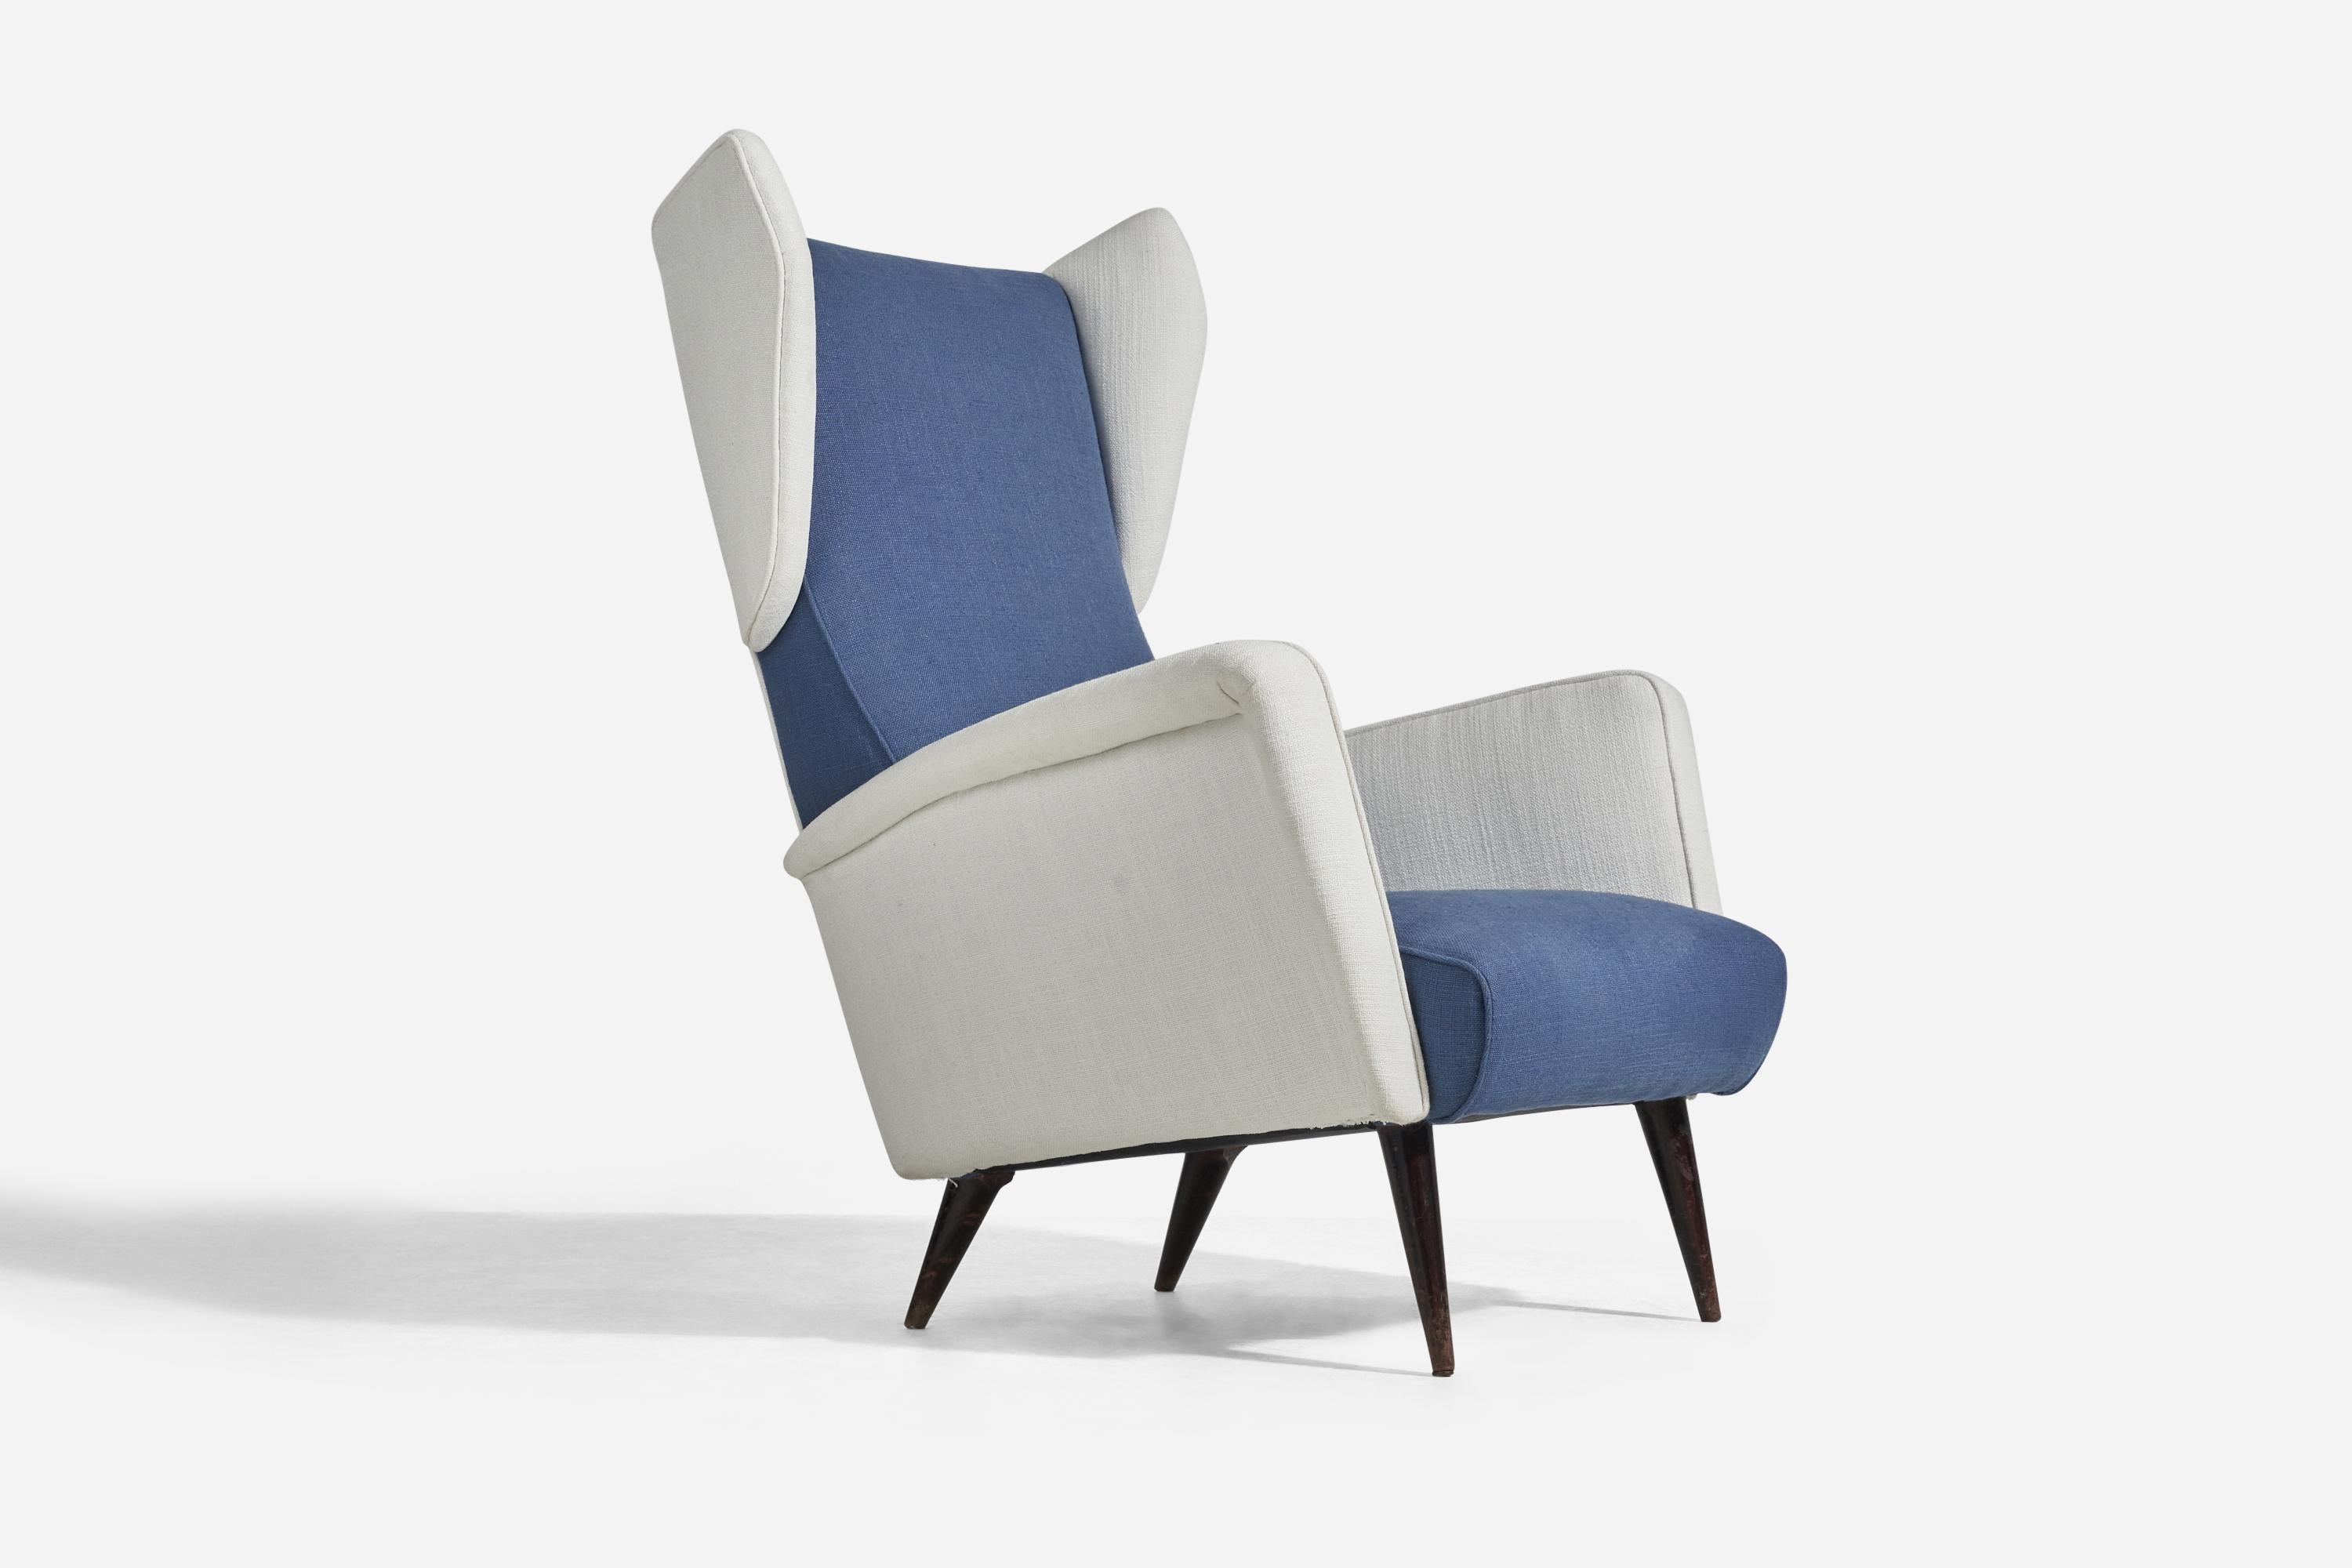 Chaise longue / chaise à oreilles en chêne et tissu blanc et bleu, conçue par Gio Ponti et produite par Cassina, Italie, années 1950. 
